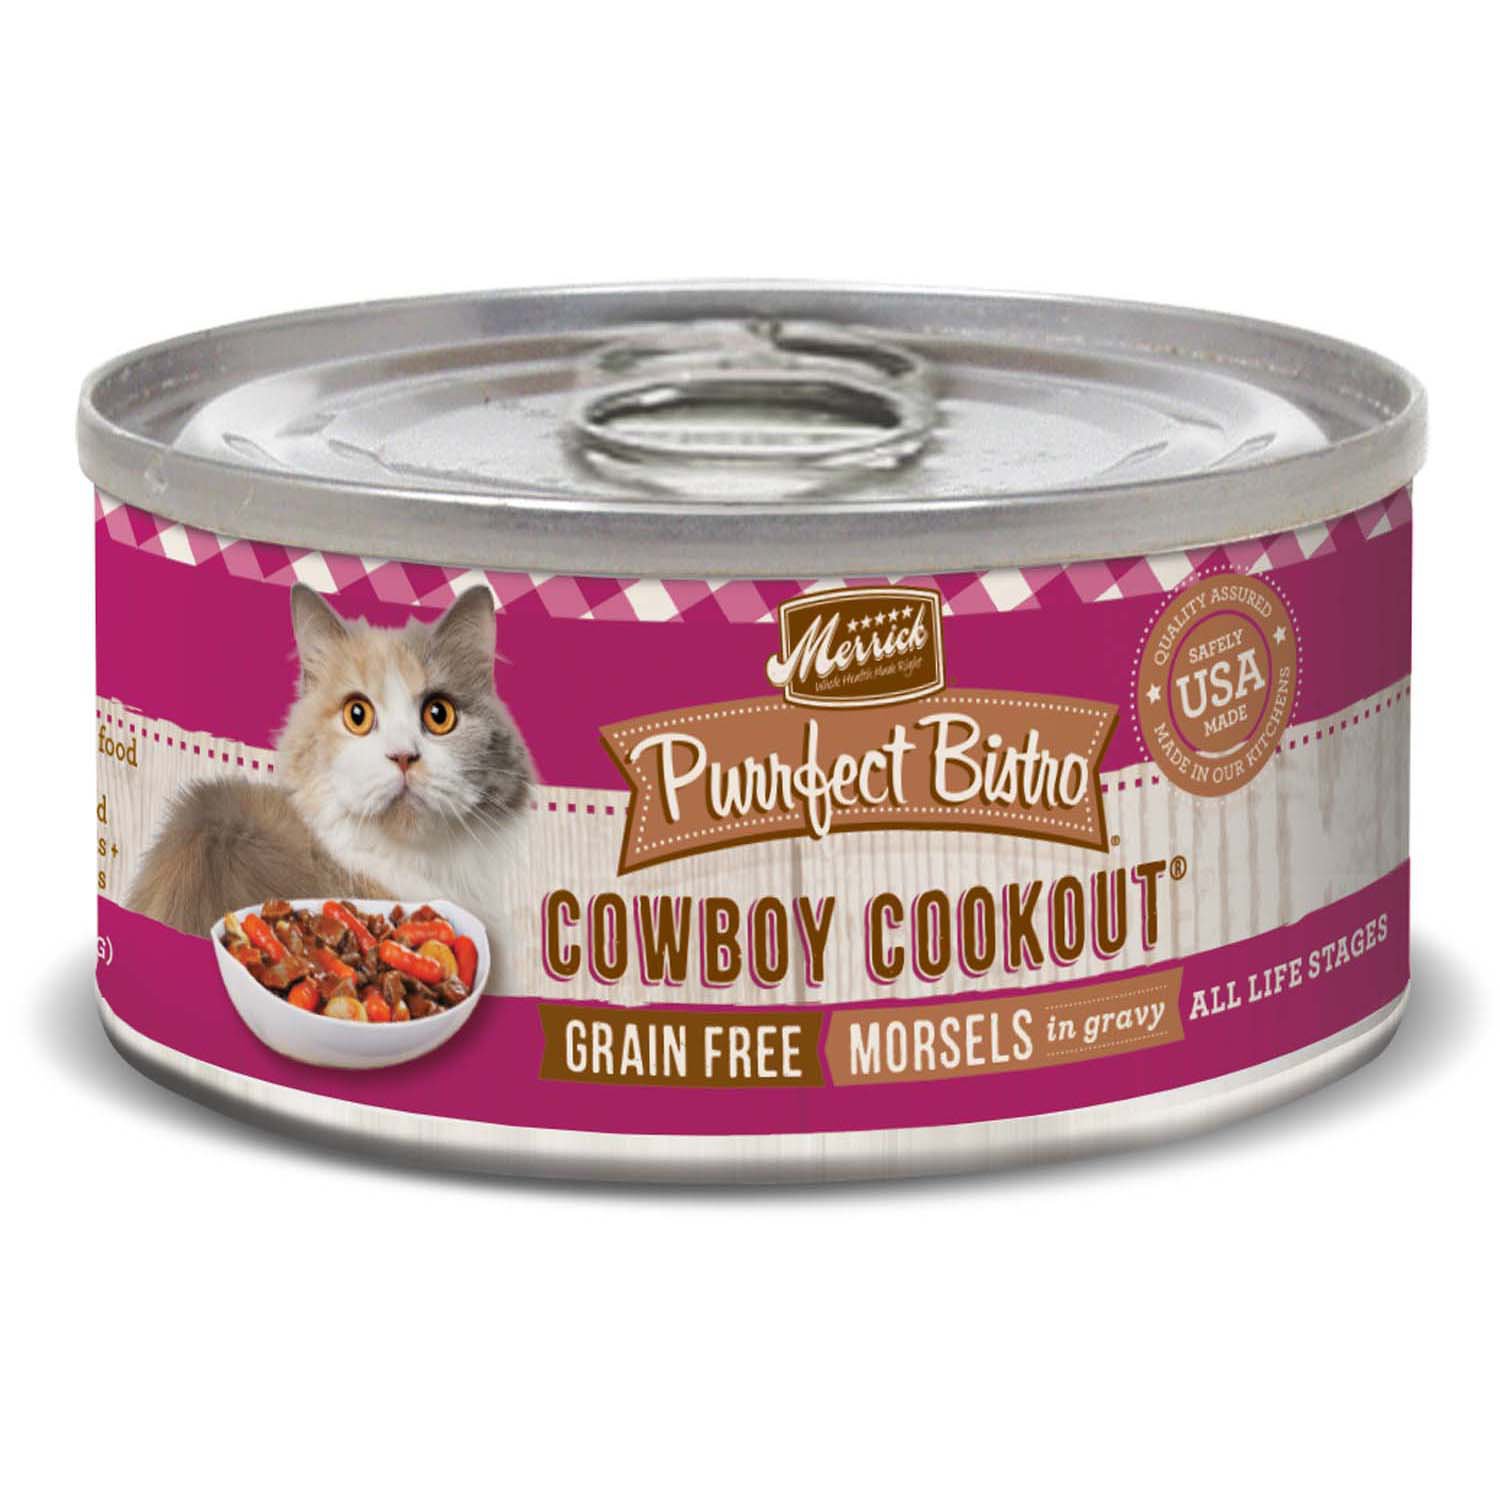 Merrick Purrfect Bistro Grain Free Cowboy Cookout Wet Cat Food Petco